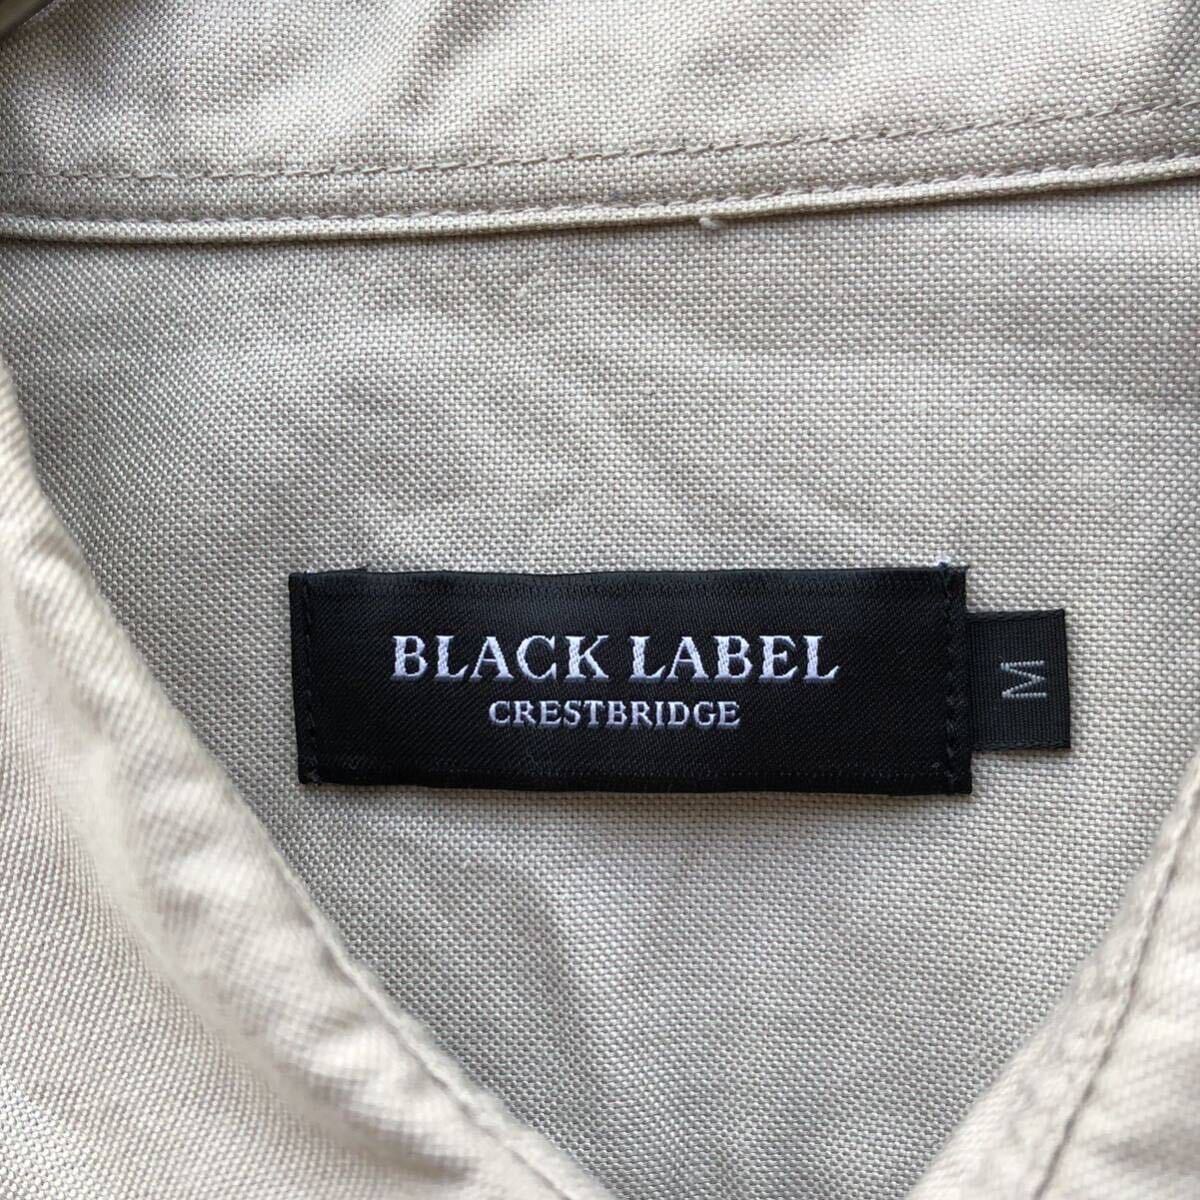  прекрасный товар / проверка * Black Label k rest Bridge BLACKLABEL CRESTBRIDGE рубашка с длинным рукавом лоскутное шитье M серый ju tops 